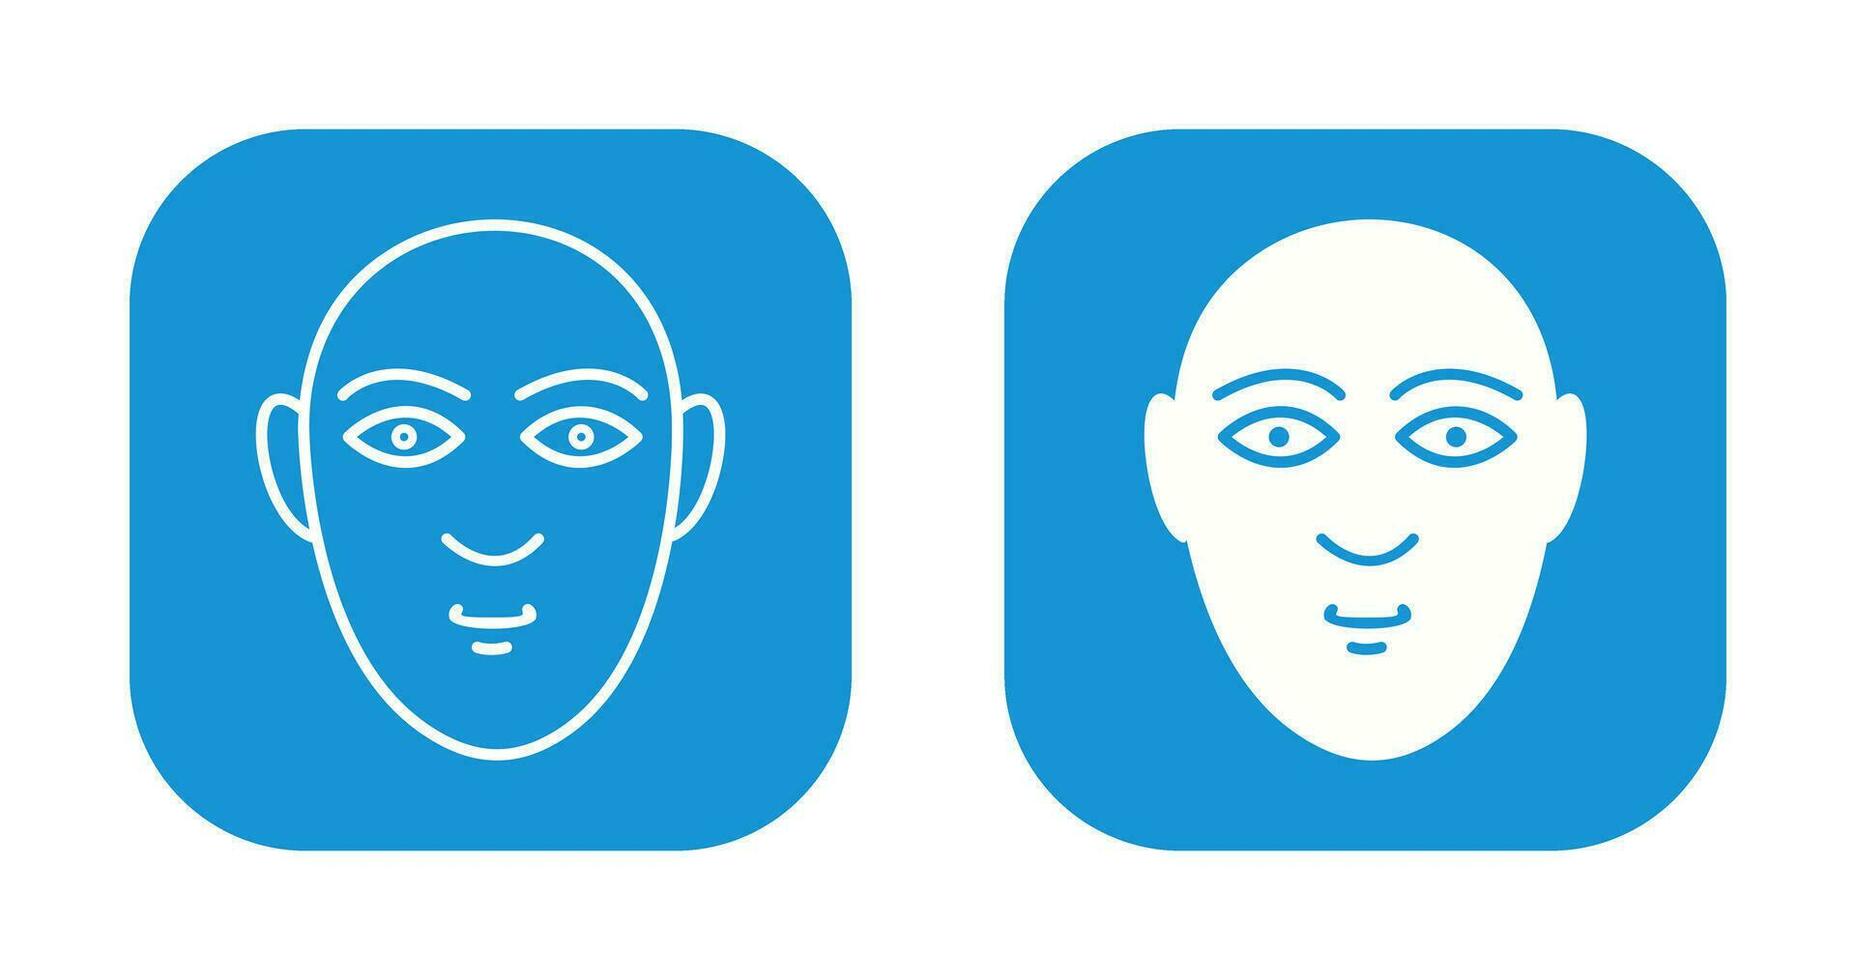 mänsklig ansikte vektor ikon